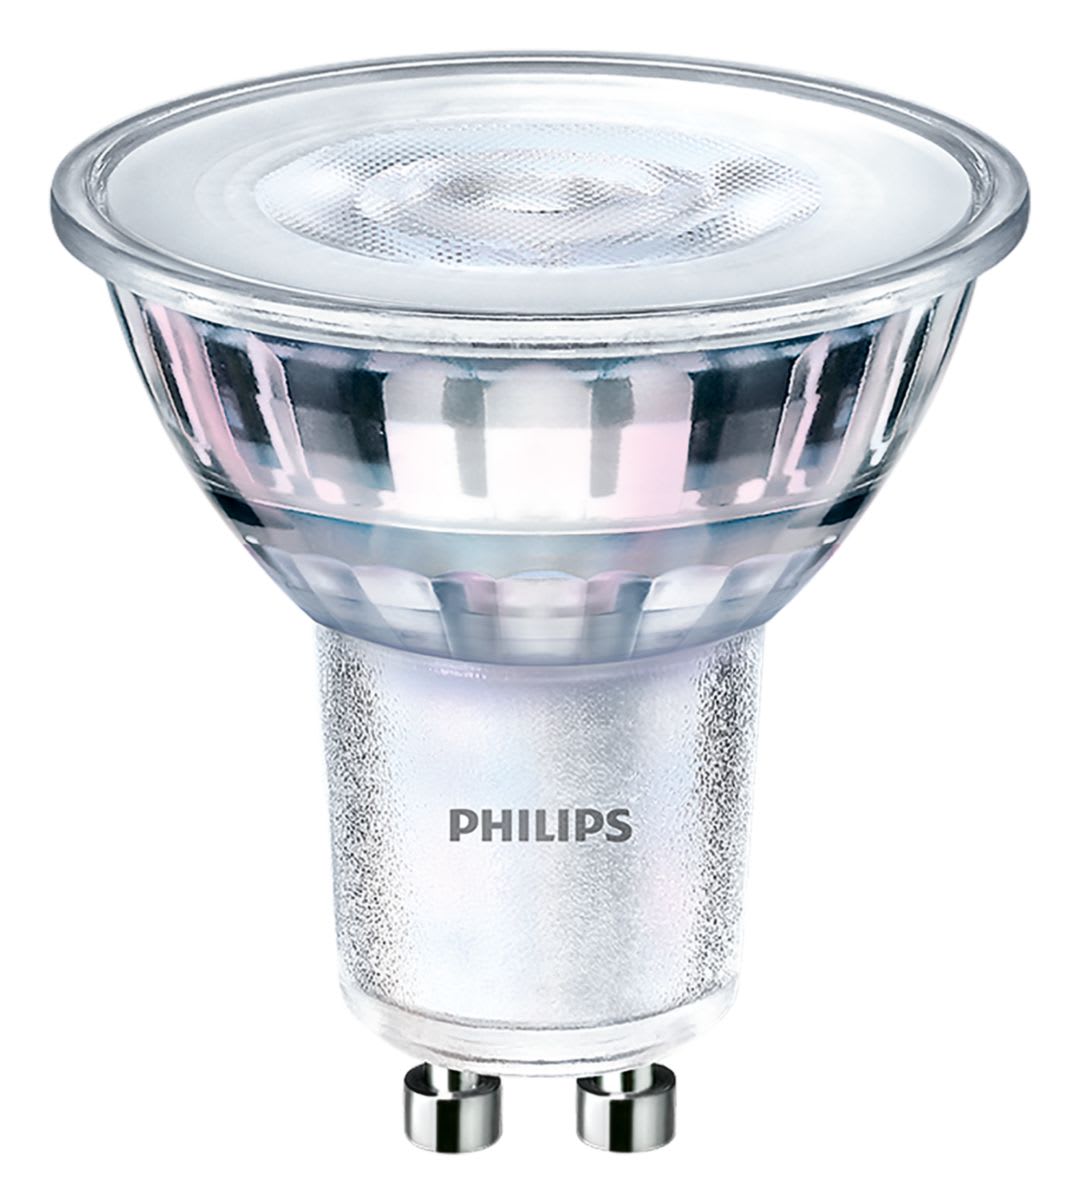 Philips Lighting - CorePro Lampe LEDspot GU10 Dim 4W 50W 36° GU10 3000K 345lm CRI80 15000h